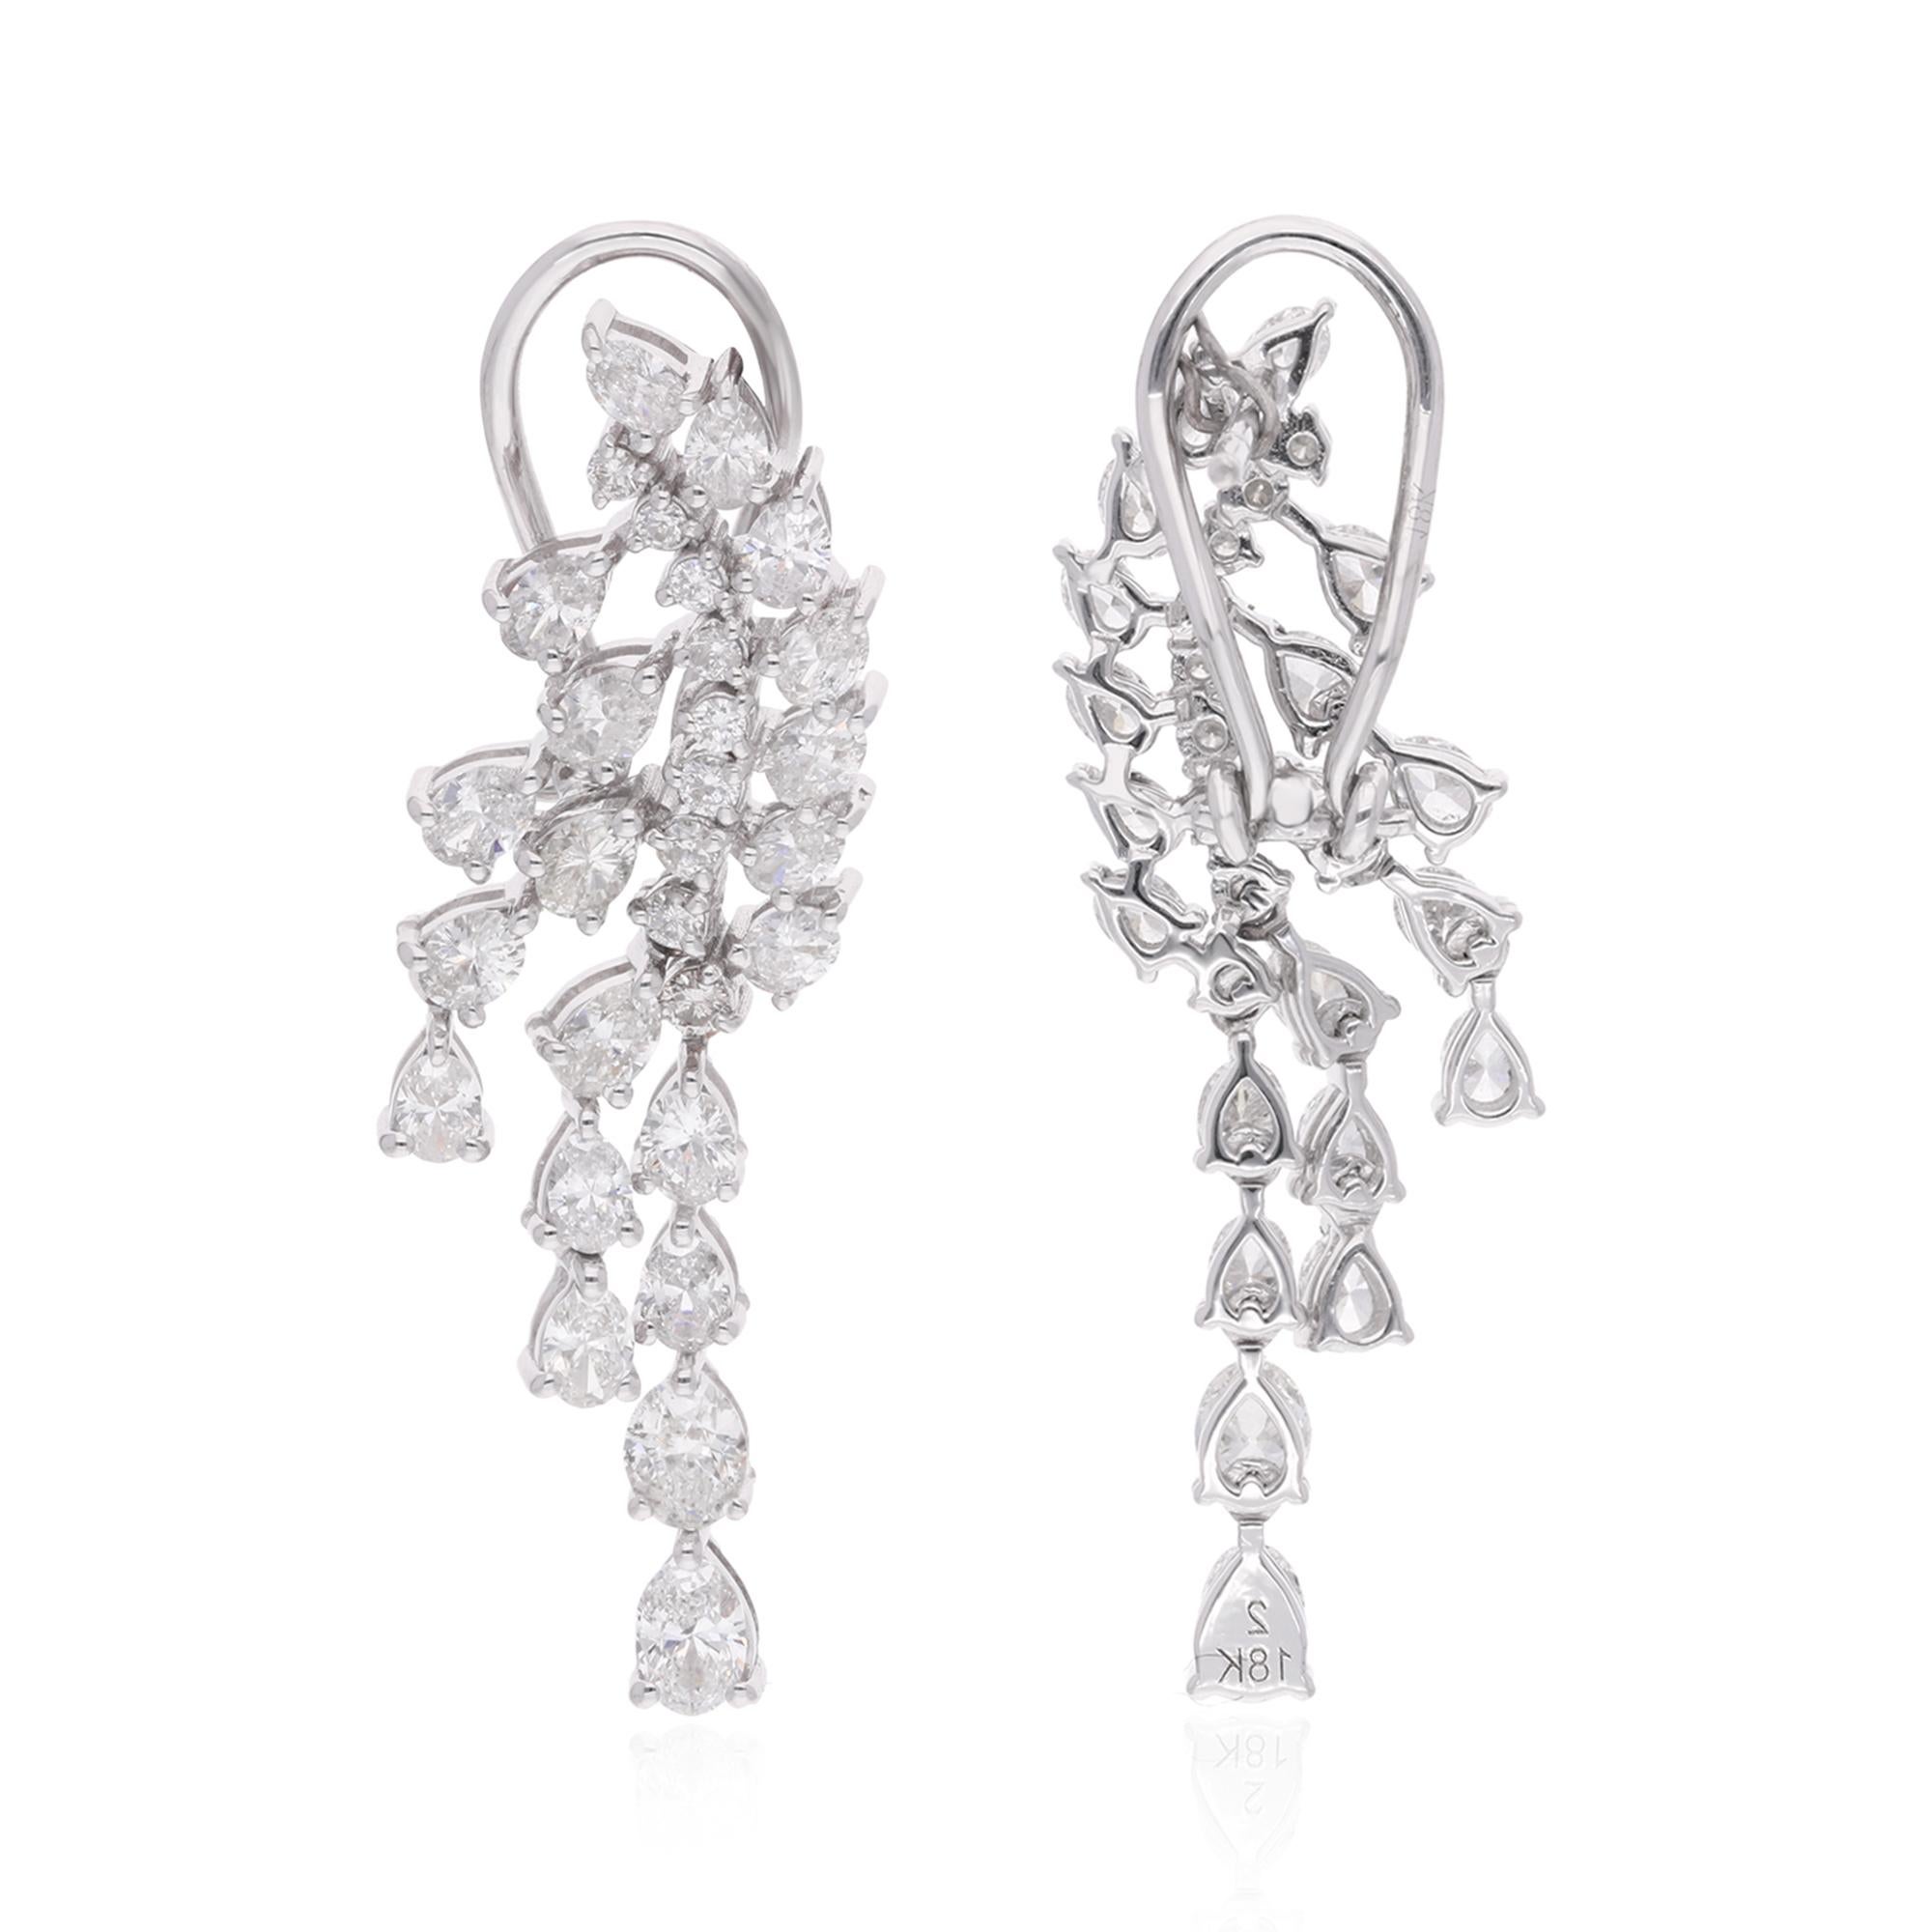 Lassen Sie sich von der opulenten Schönheit dieser glamourösen Diamant-Ohrringe verzaubern. Jeder Ohrring besticht durch eine Gruppe funkelnder Diamanten, die sorgfältig in einem atemberaubenden Design angeordnet sind. Diese Ohrringe sind in